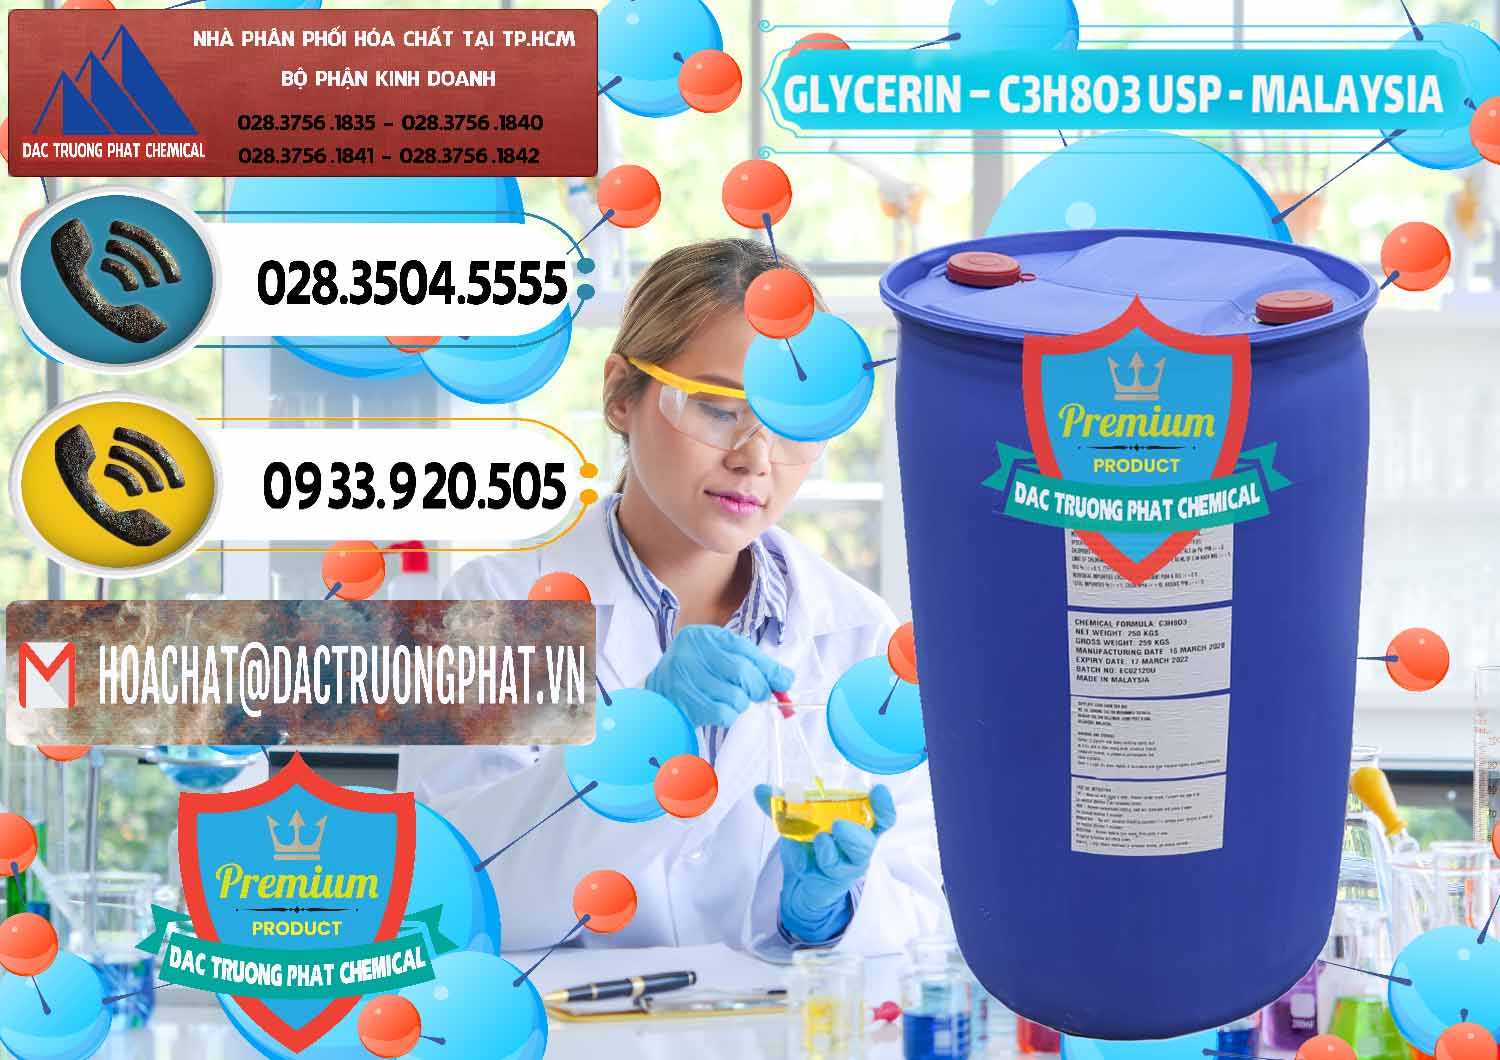 Chuyên phân phối & bán Glycerin – C3H8O3 USP Malaysia - 0233 - Đơn vị cung cấp và phân phối hóa chất tại TP.HCM - hoachatdetnhuom.vn